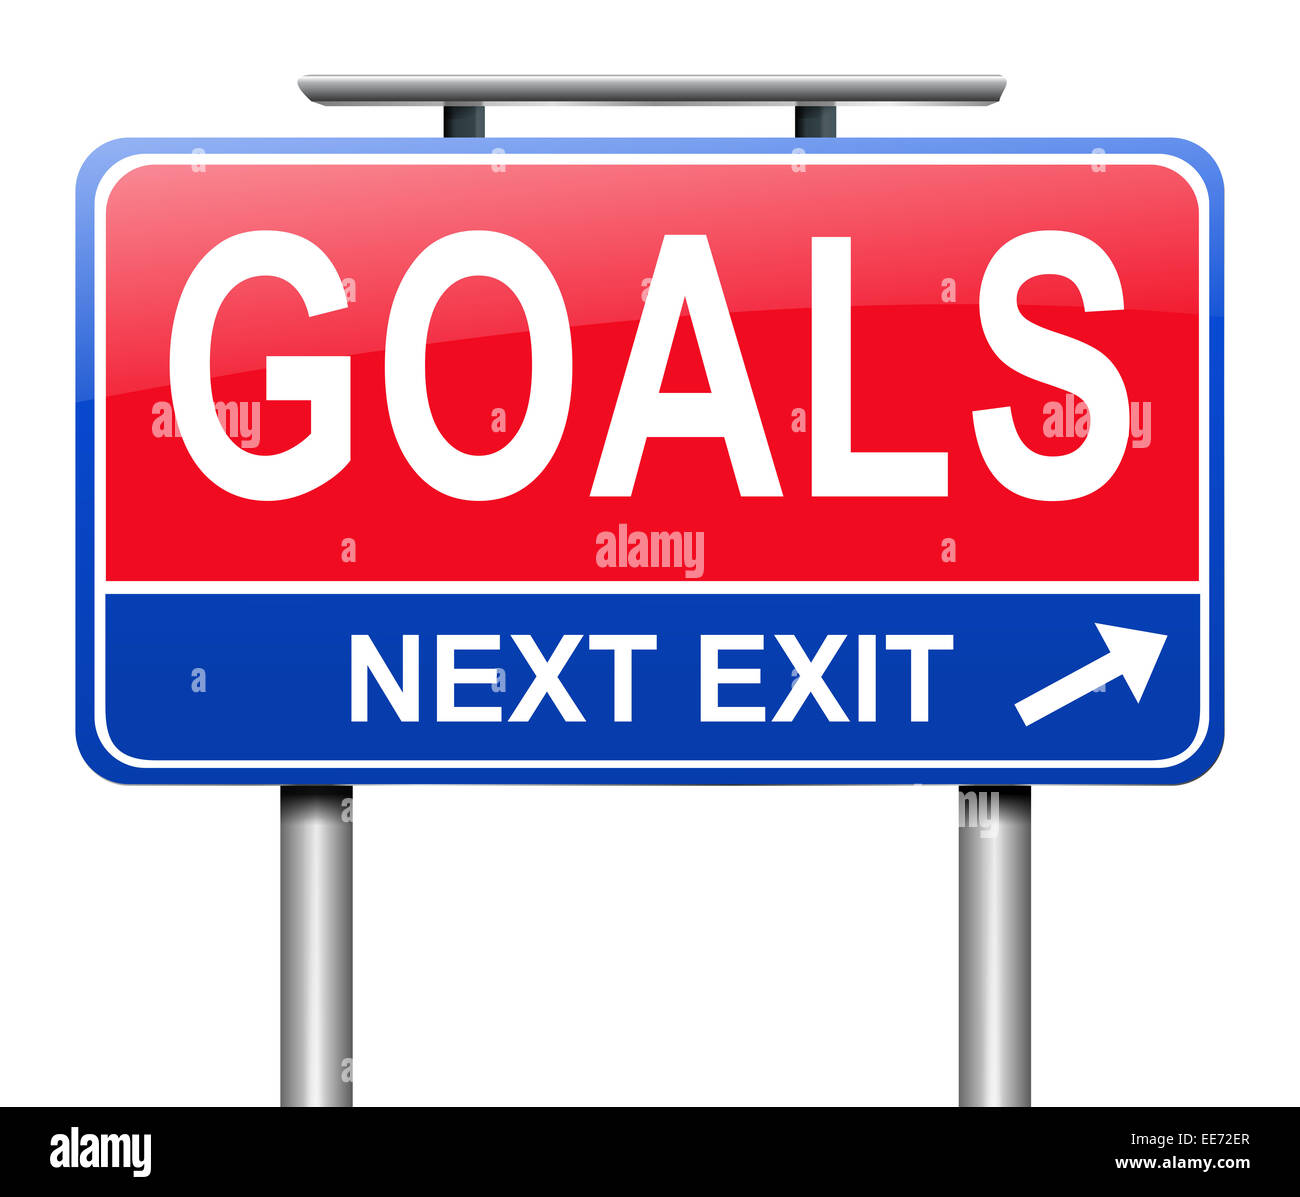 Goal concept. Stock Photo